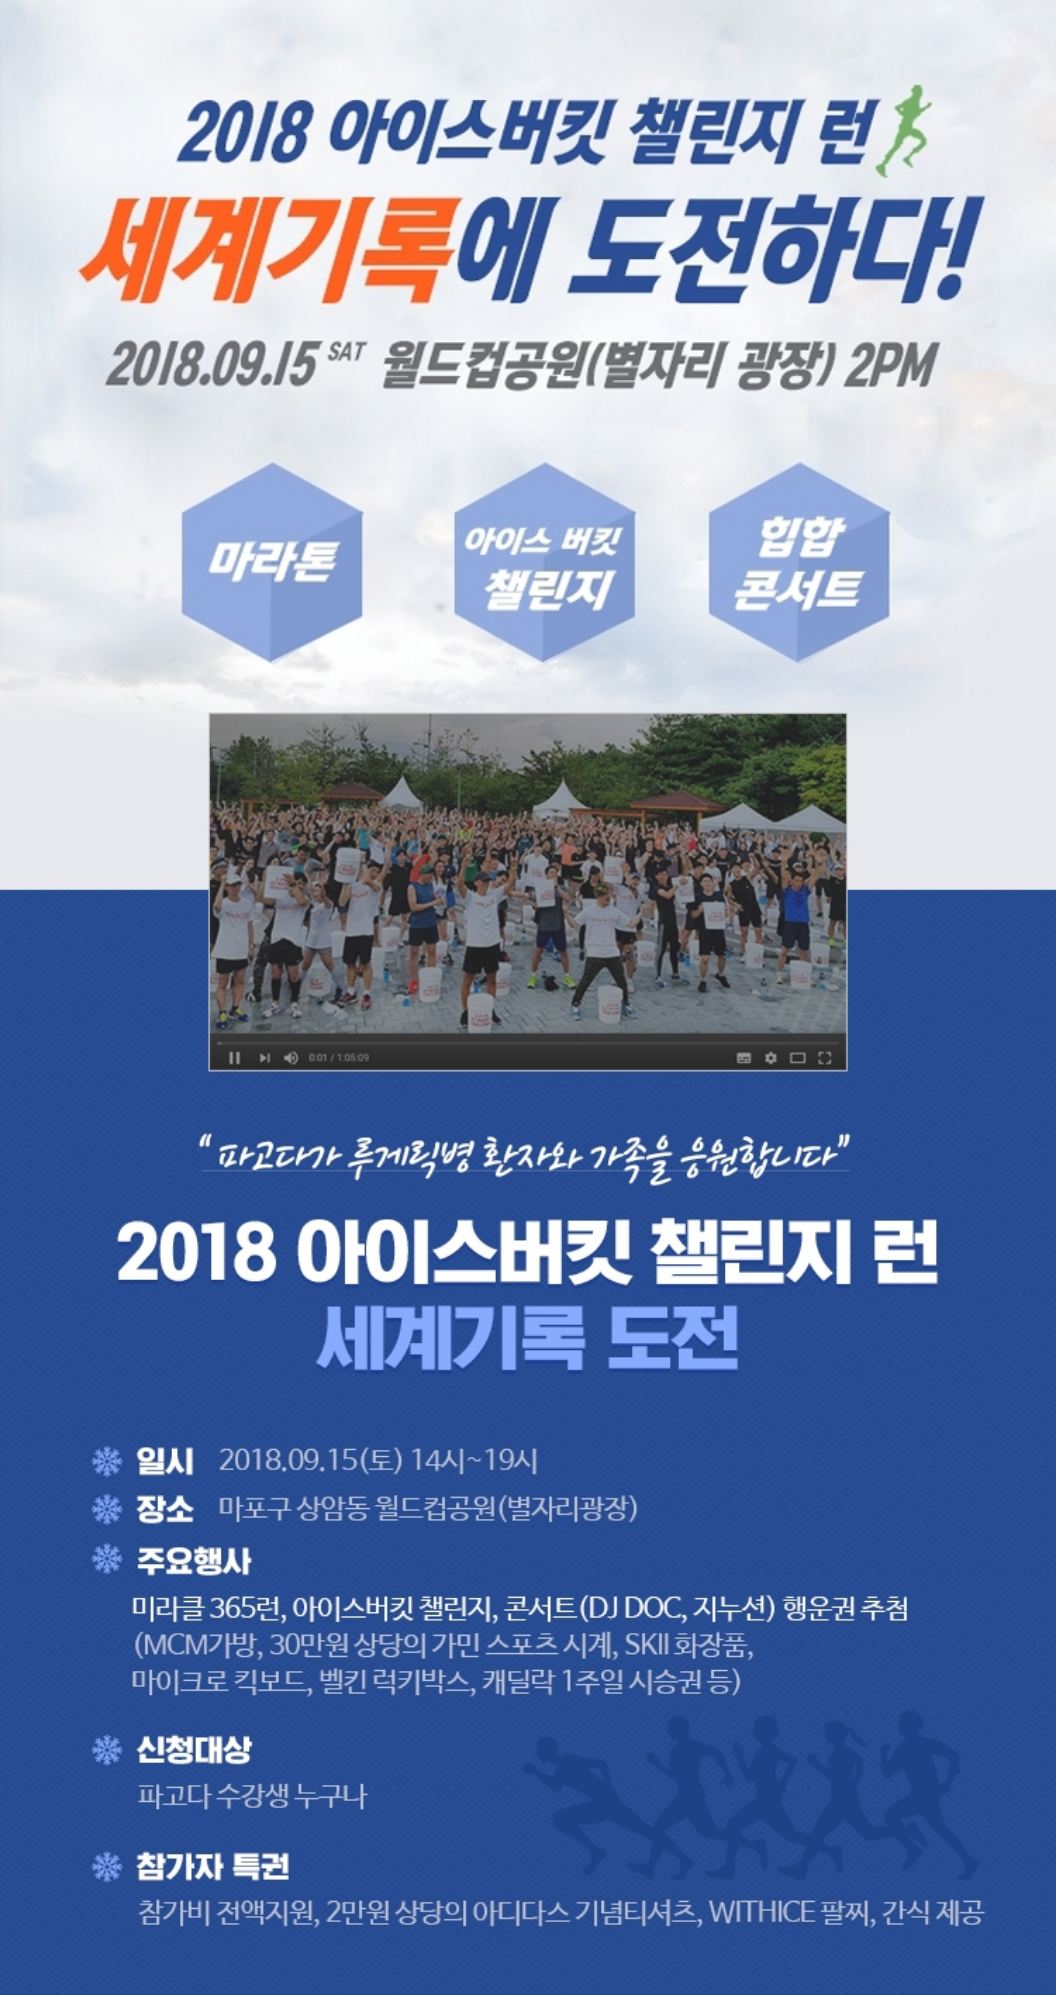 2018 아이스버킷 챌린지 런 세계기록에 도전하다! 2018.09.15.토. 월드컵공원(별자리 광장) 2PM